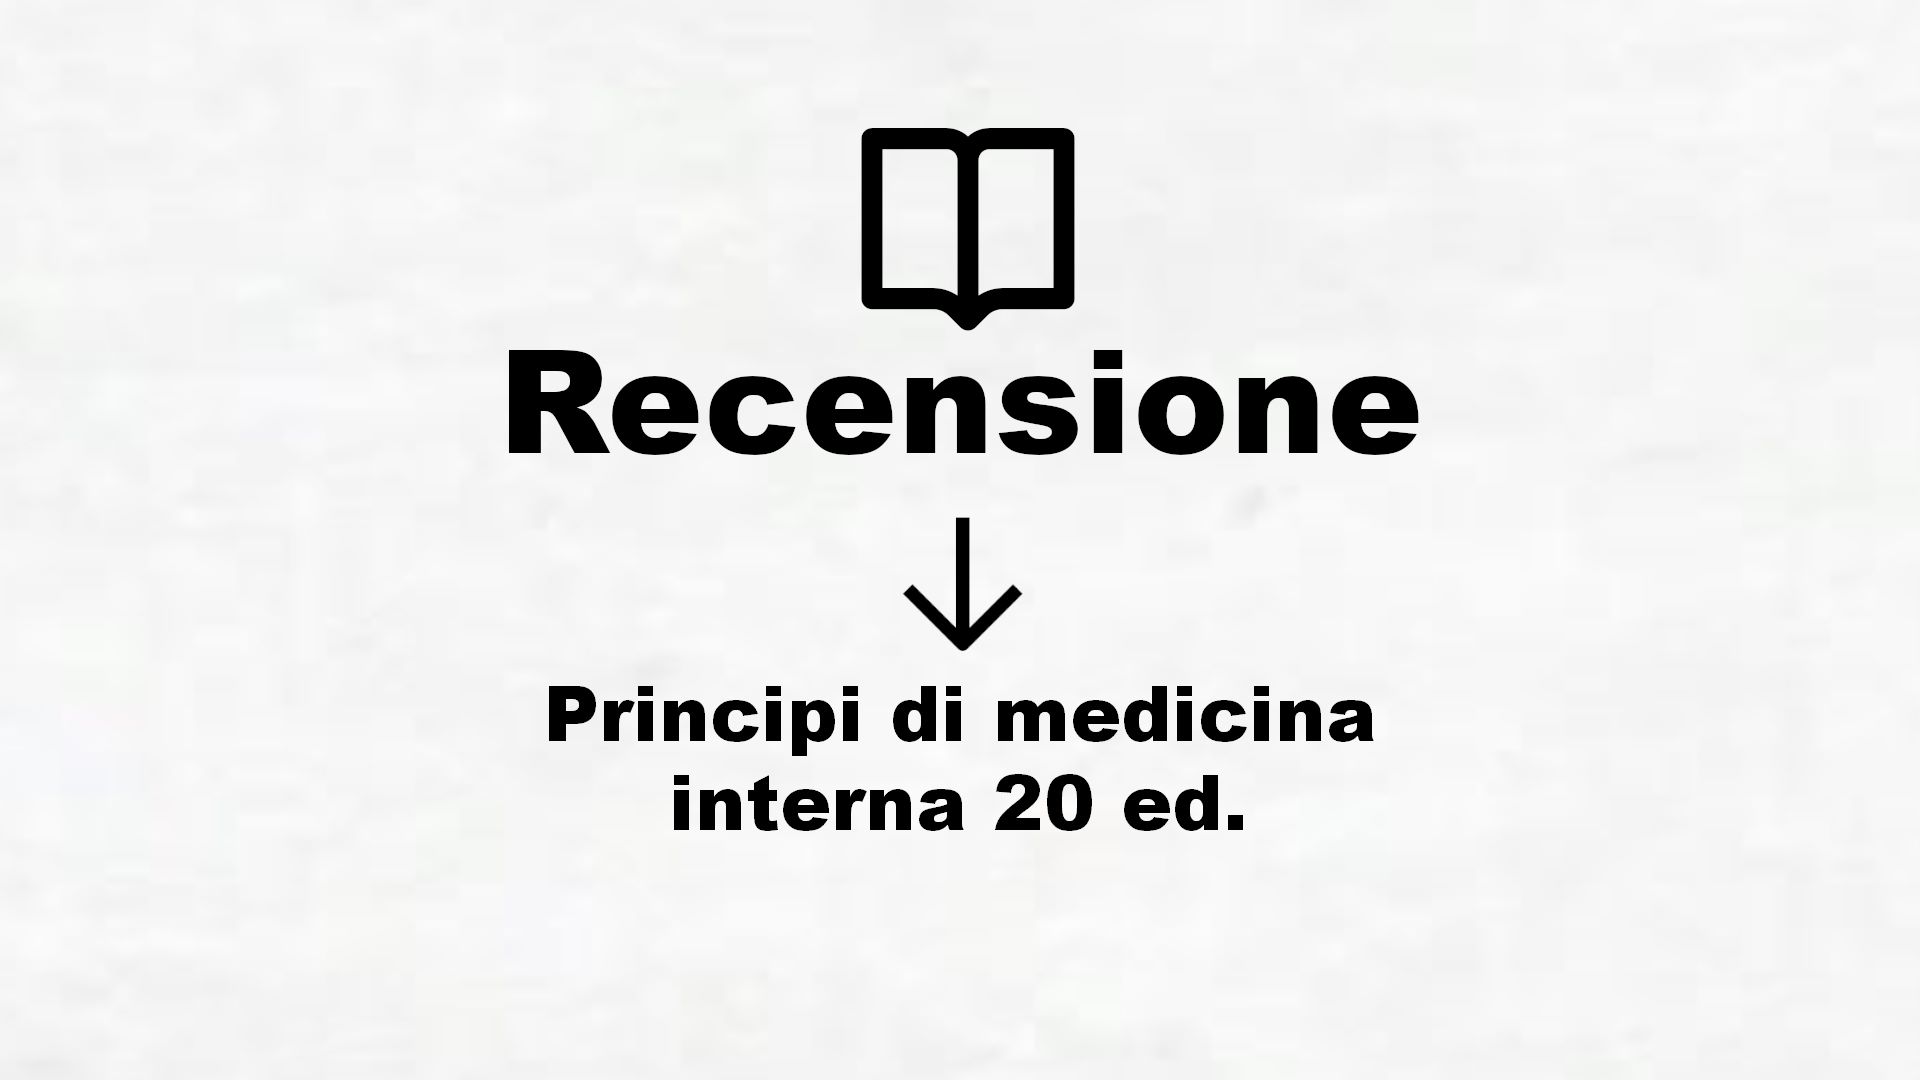 Principi di medicina interna 20 ed. – Recensione Libro